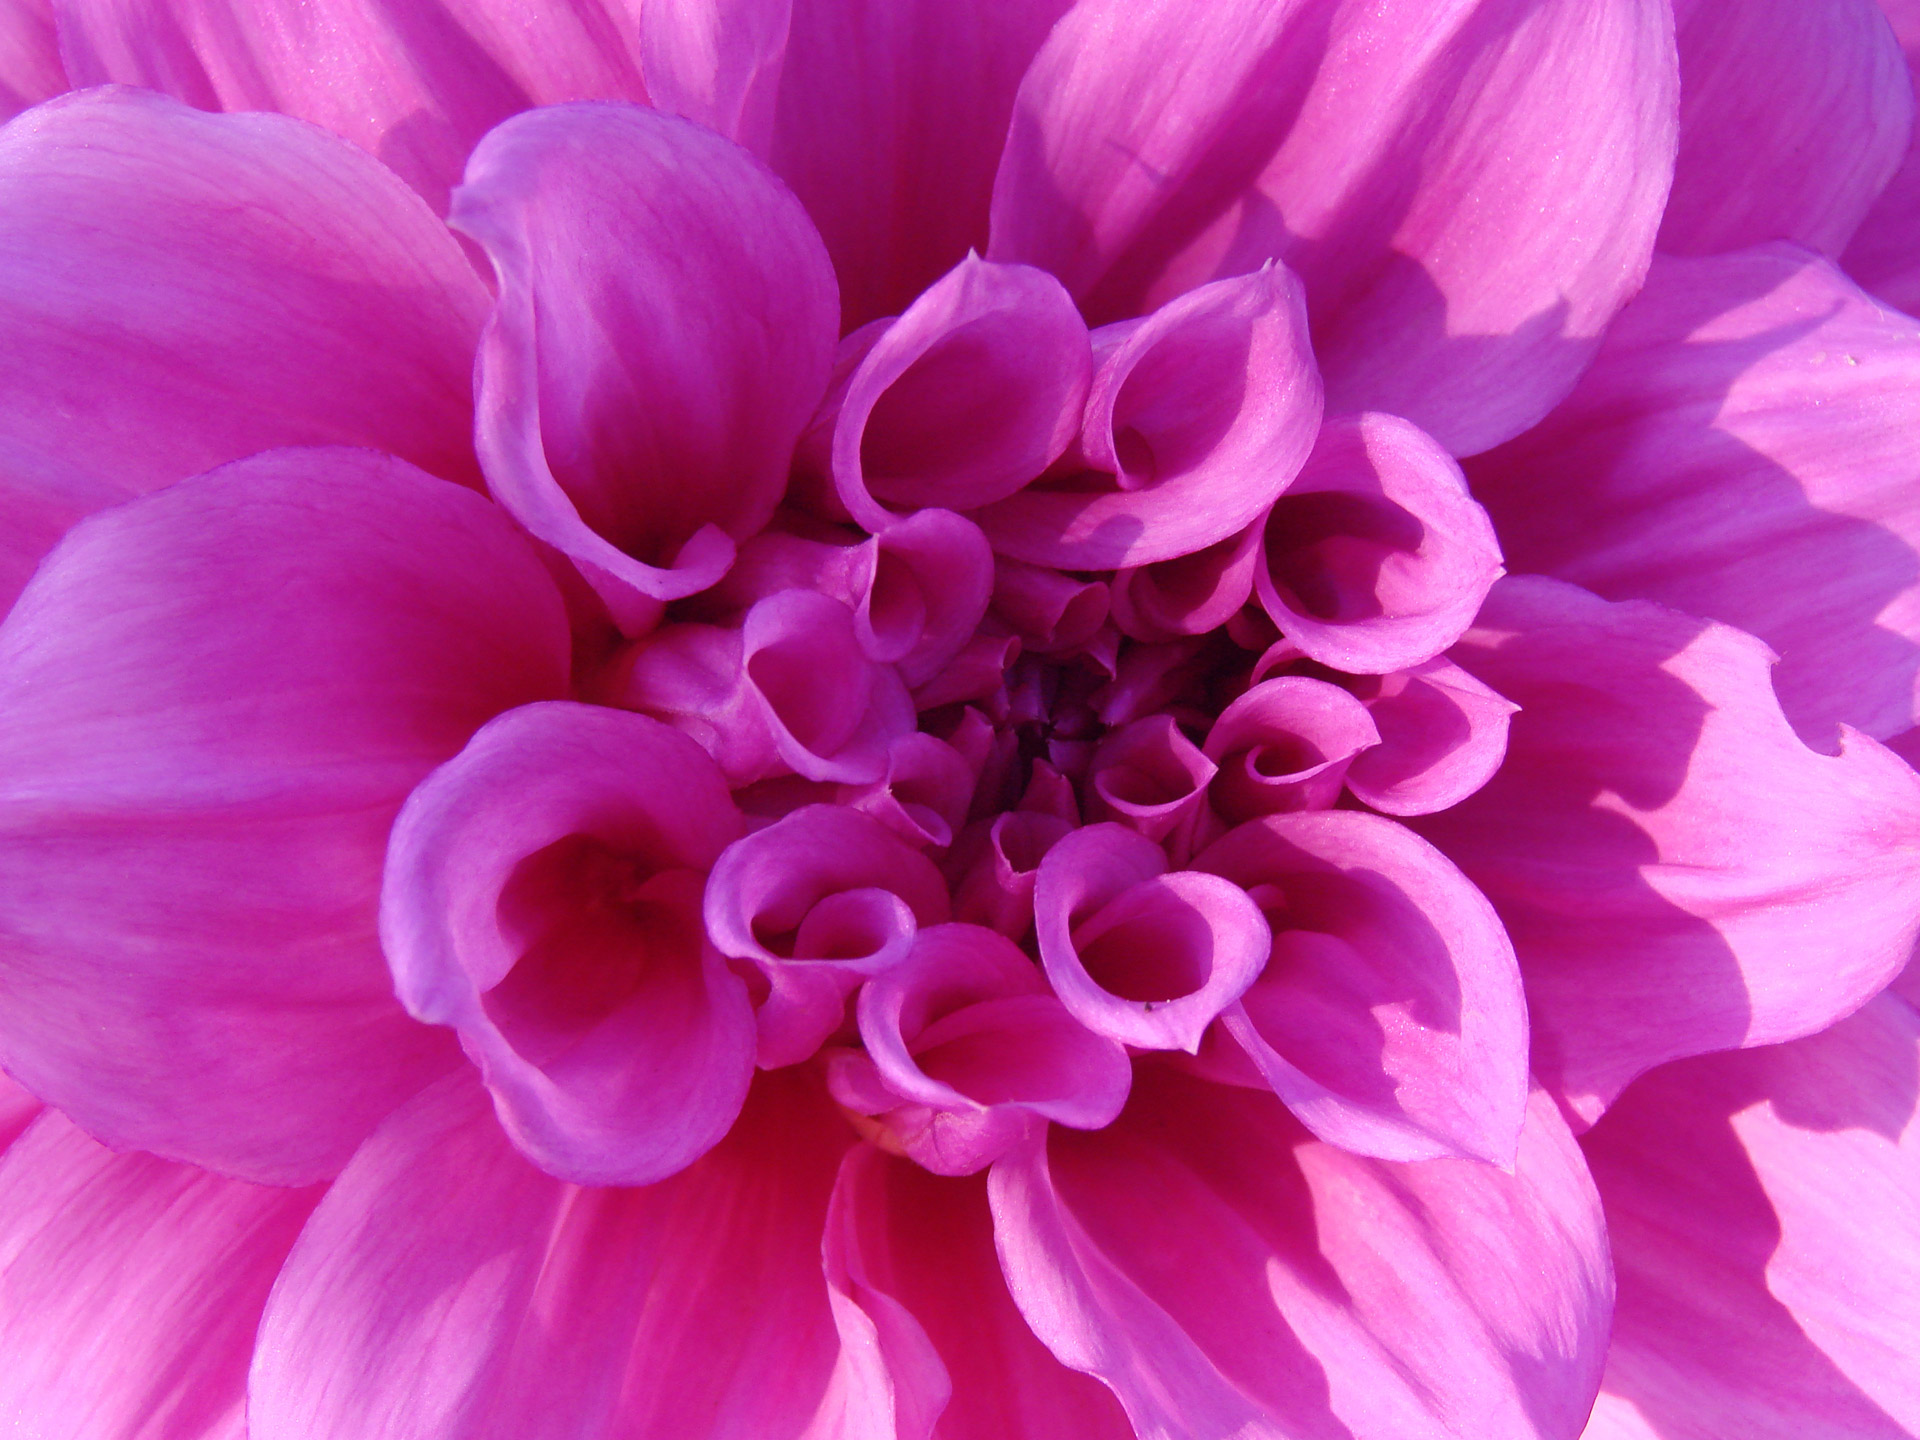 chrysanthemum pink flower free photo